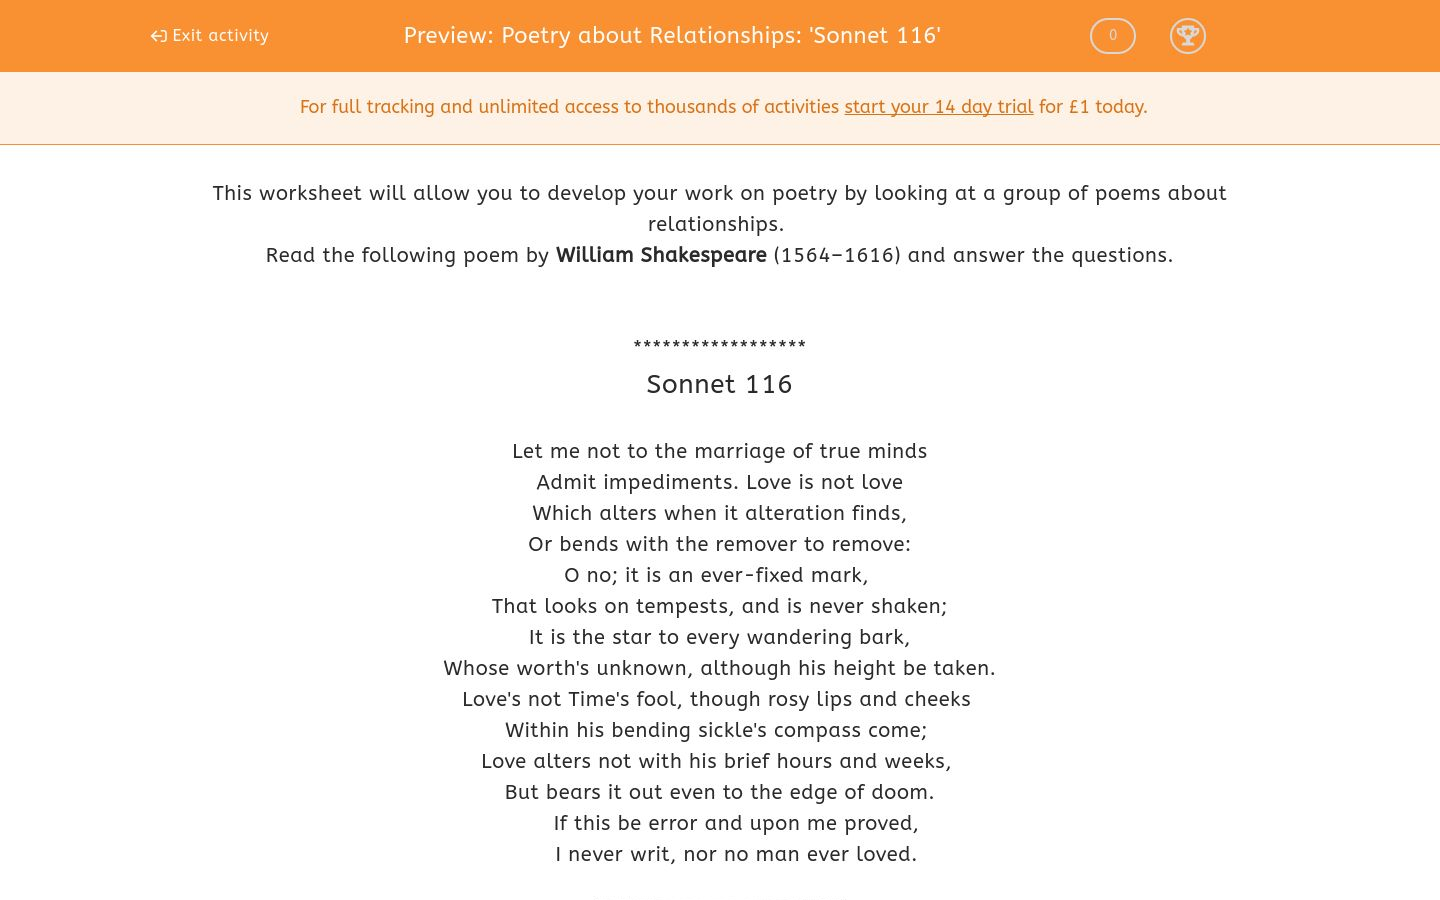 sonnet 116